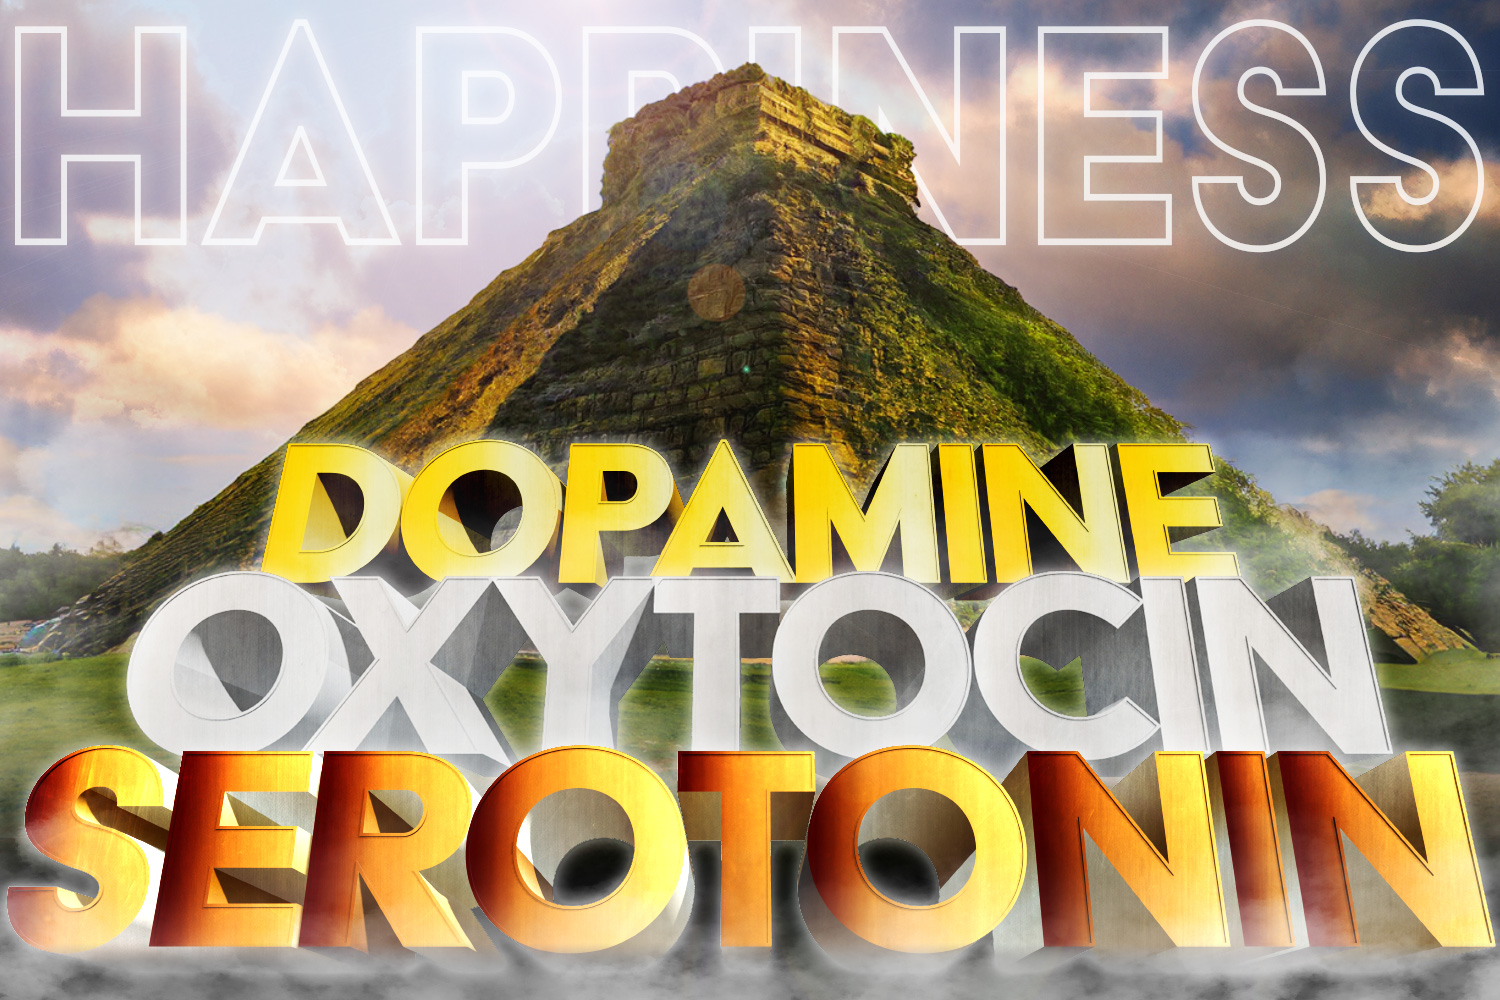 【幸せになる方法】断酒でセロトニン、オキシトシン、ドーパミンを攻略せよ!